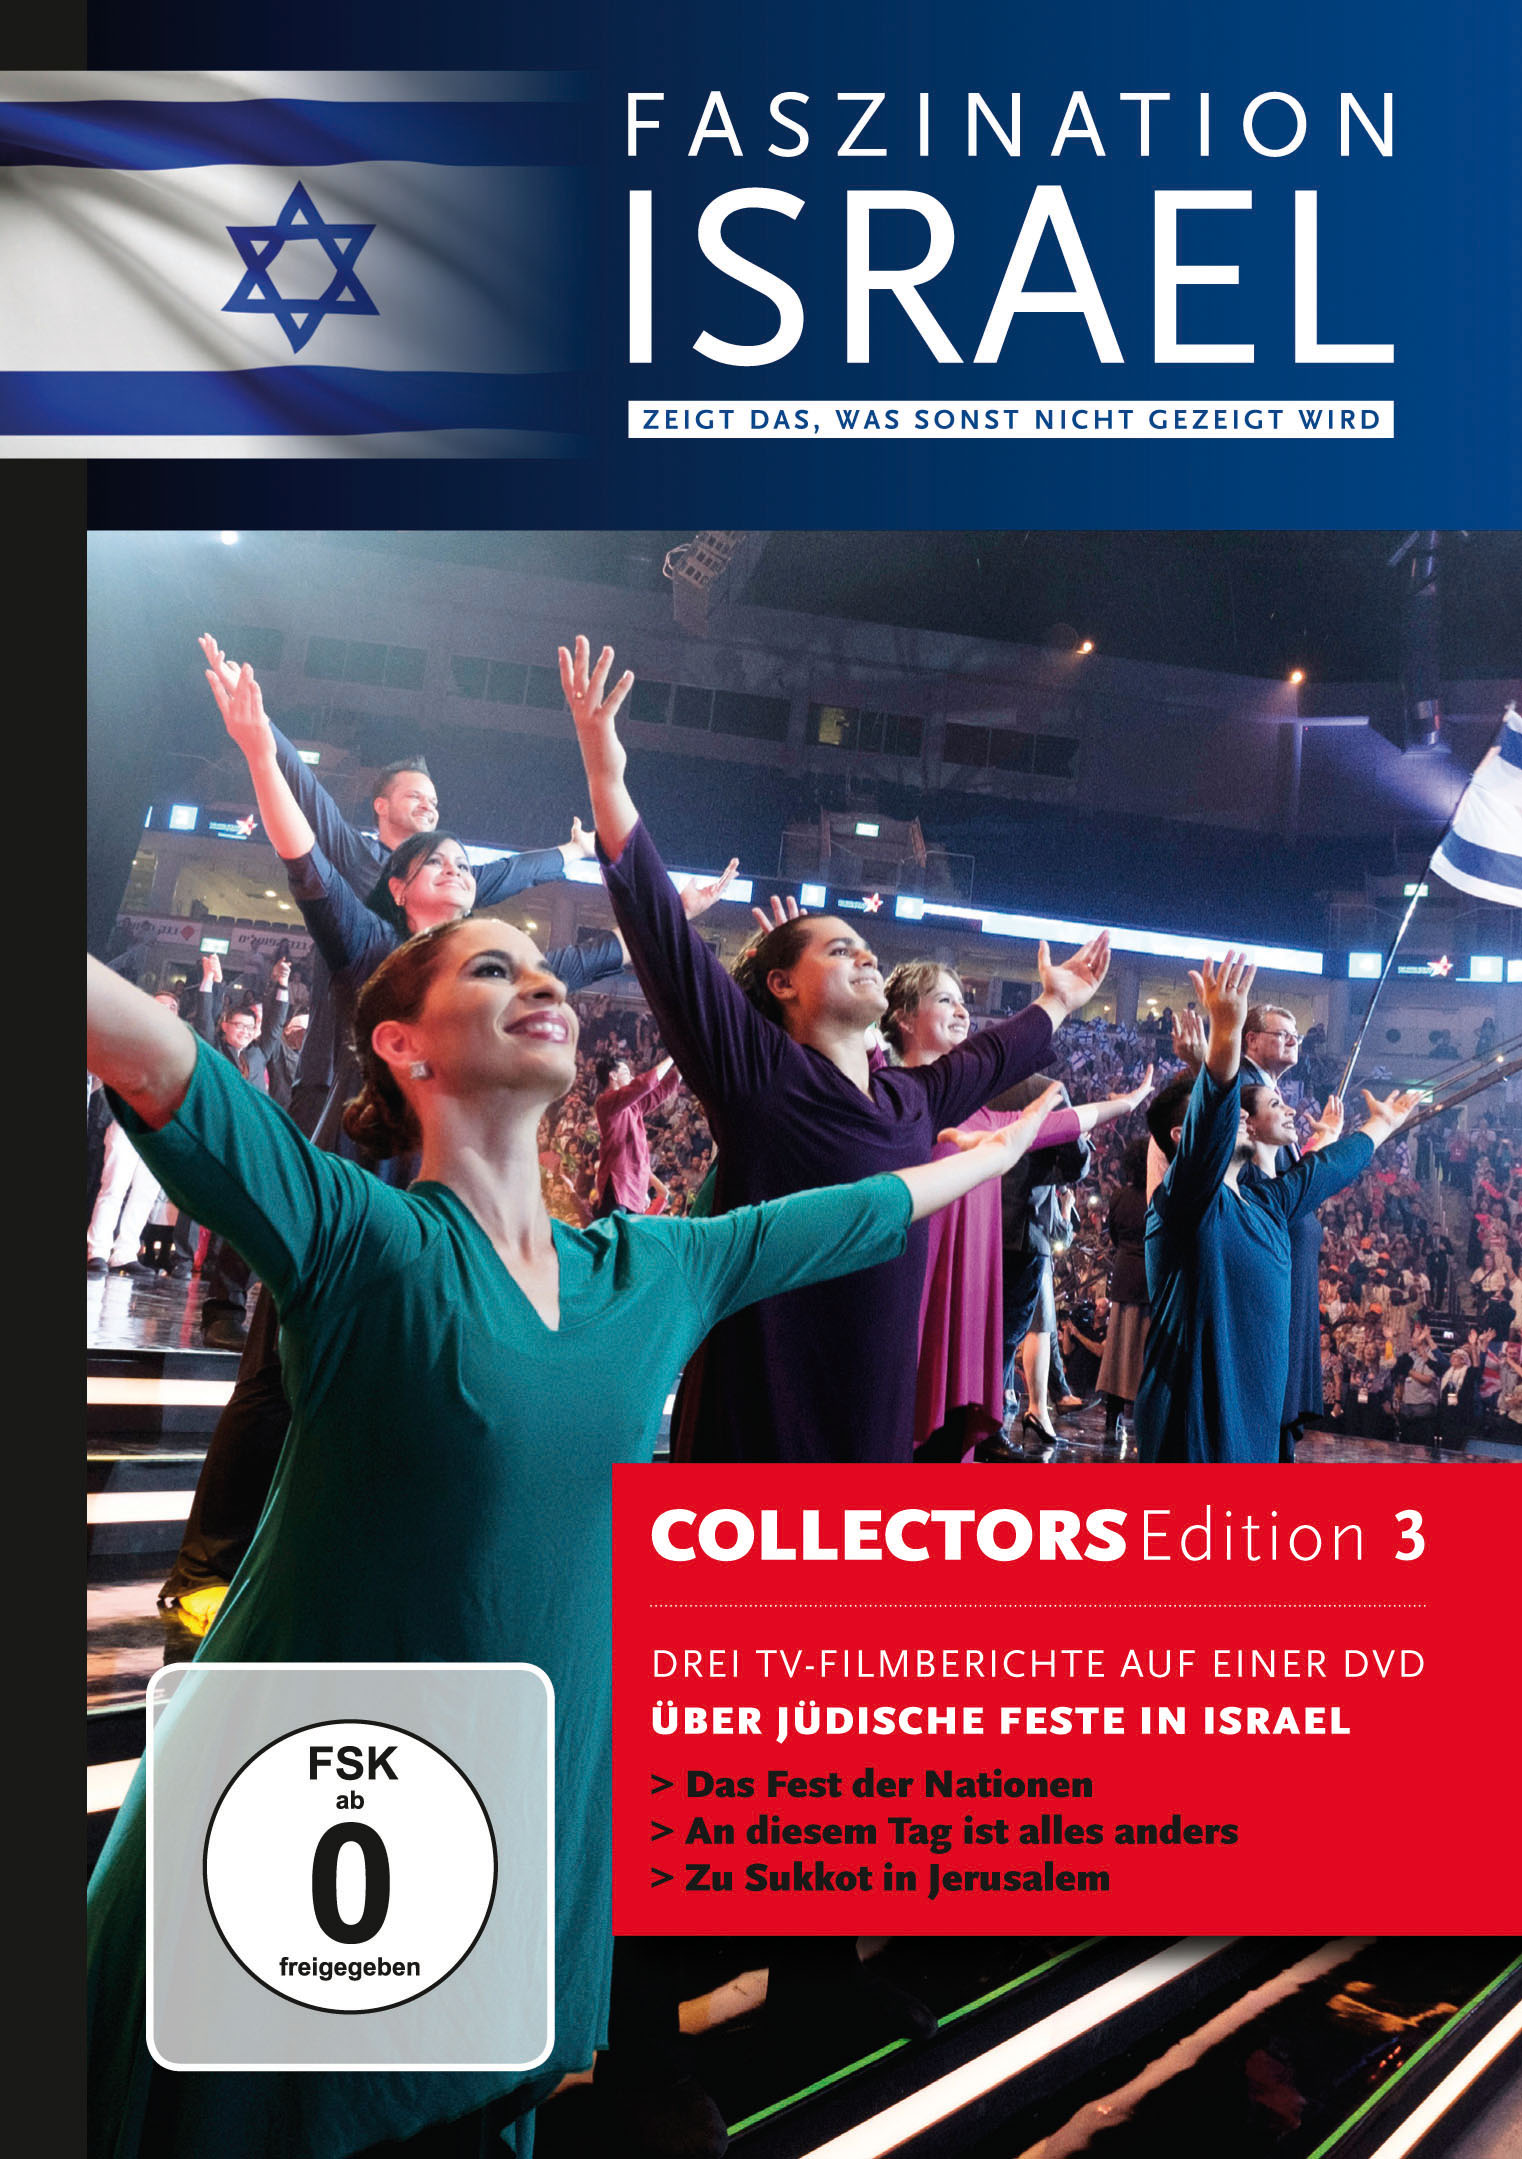 Faszination Israel - Über die Feste in Israel|Collectors Edition 3